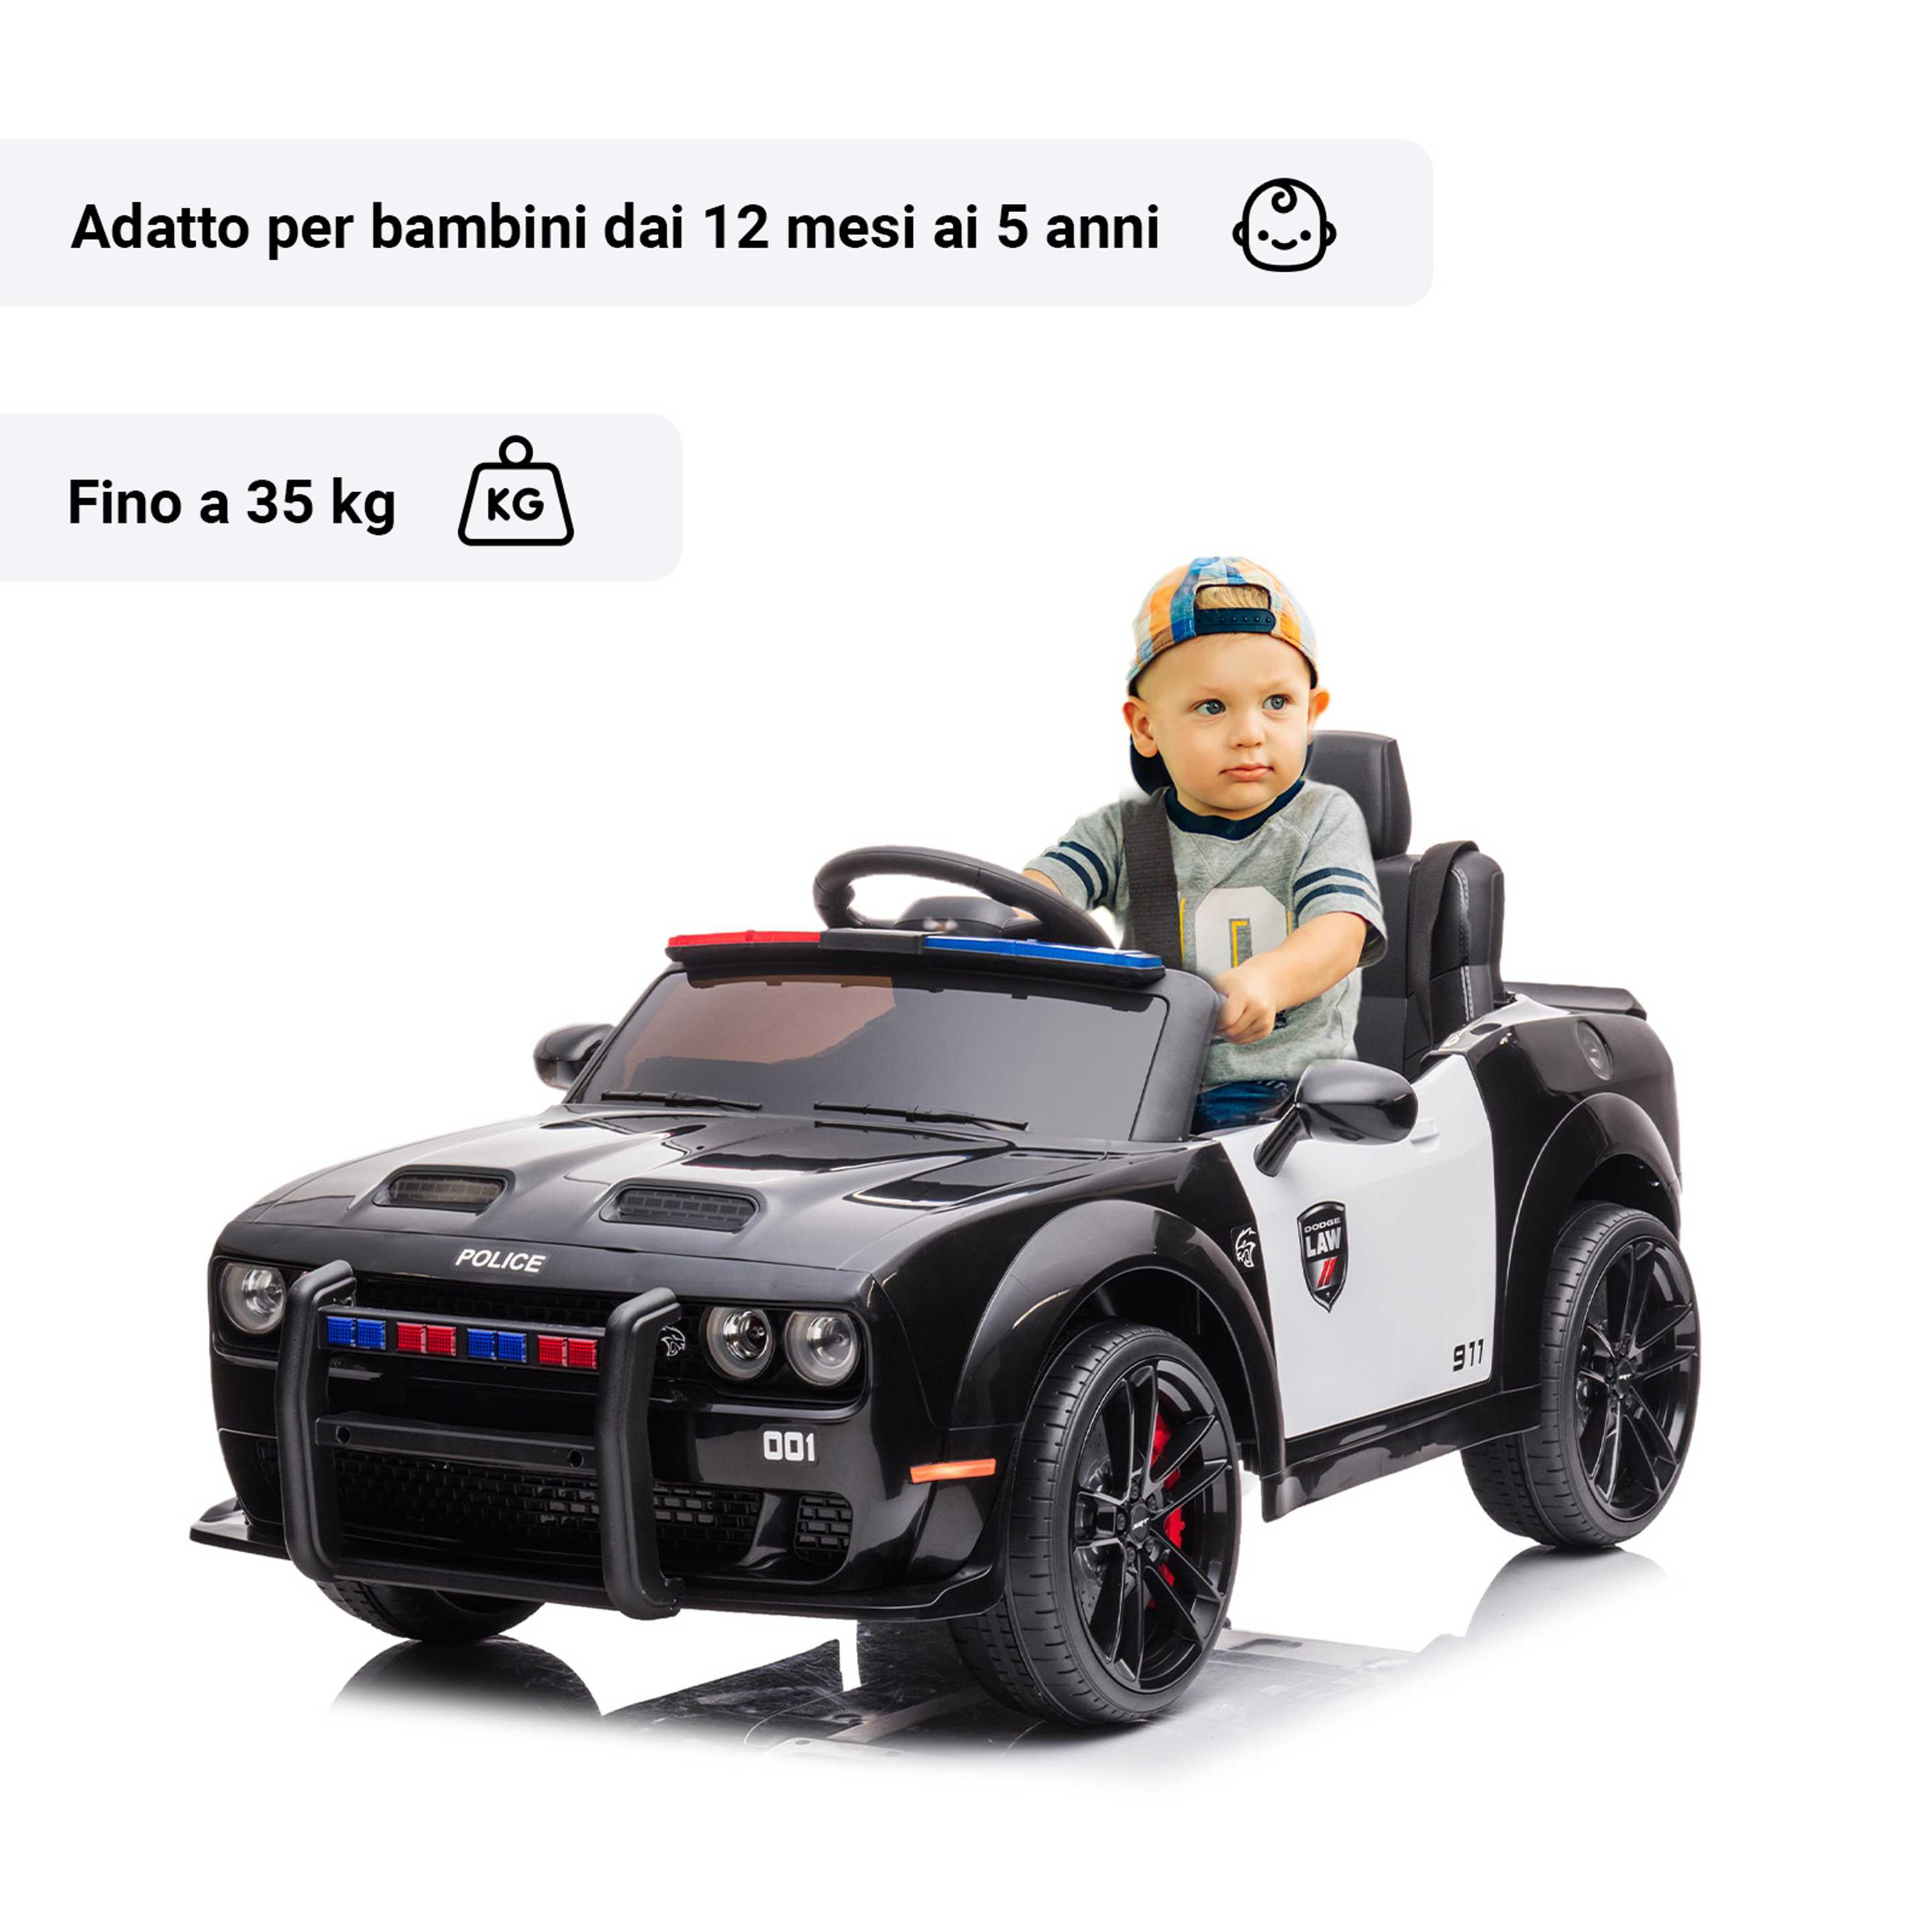 Dodge police con bambino